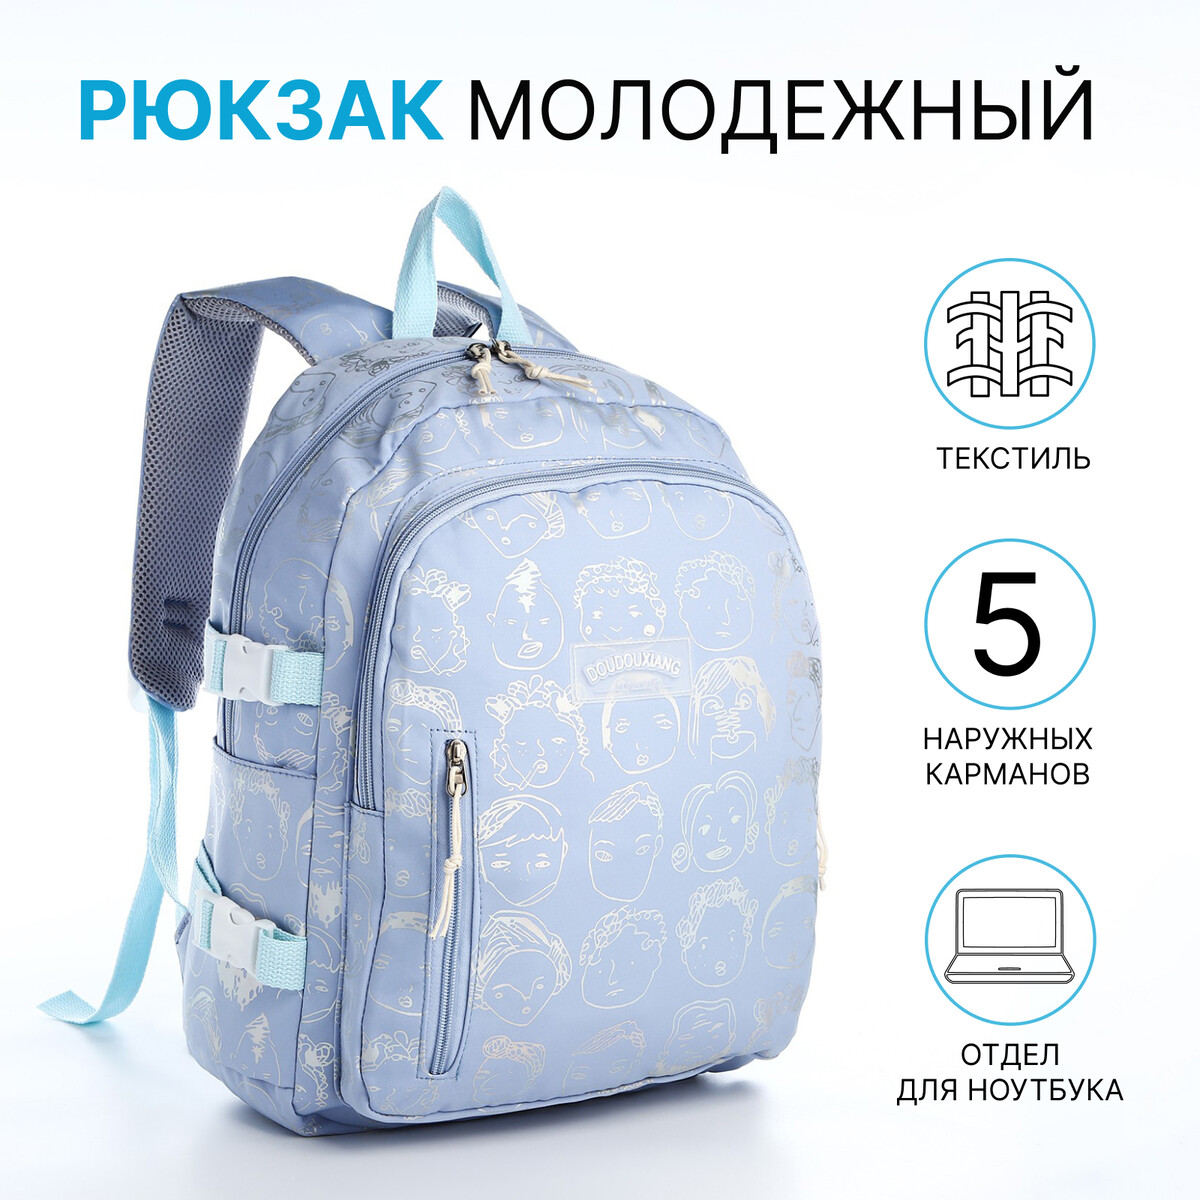 Рюкзак школьный из текстиля 2 отдела на молнии, 4 кармана, цвет голубой